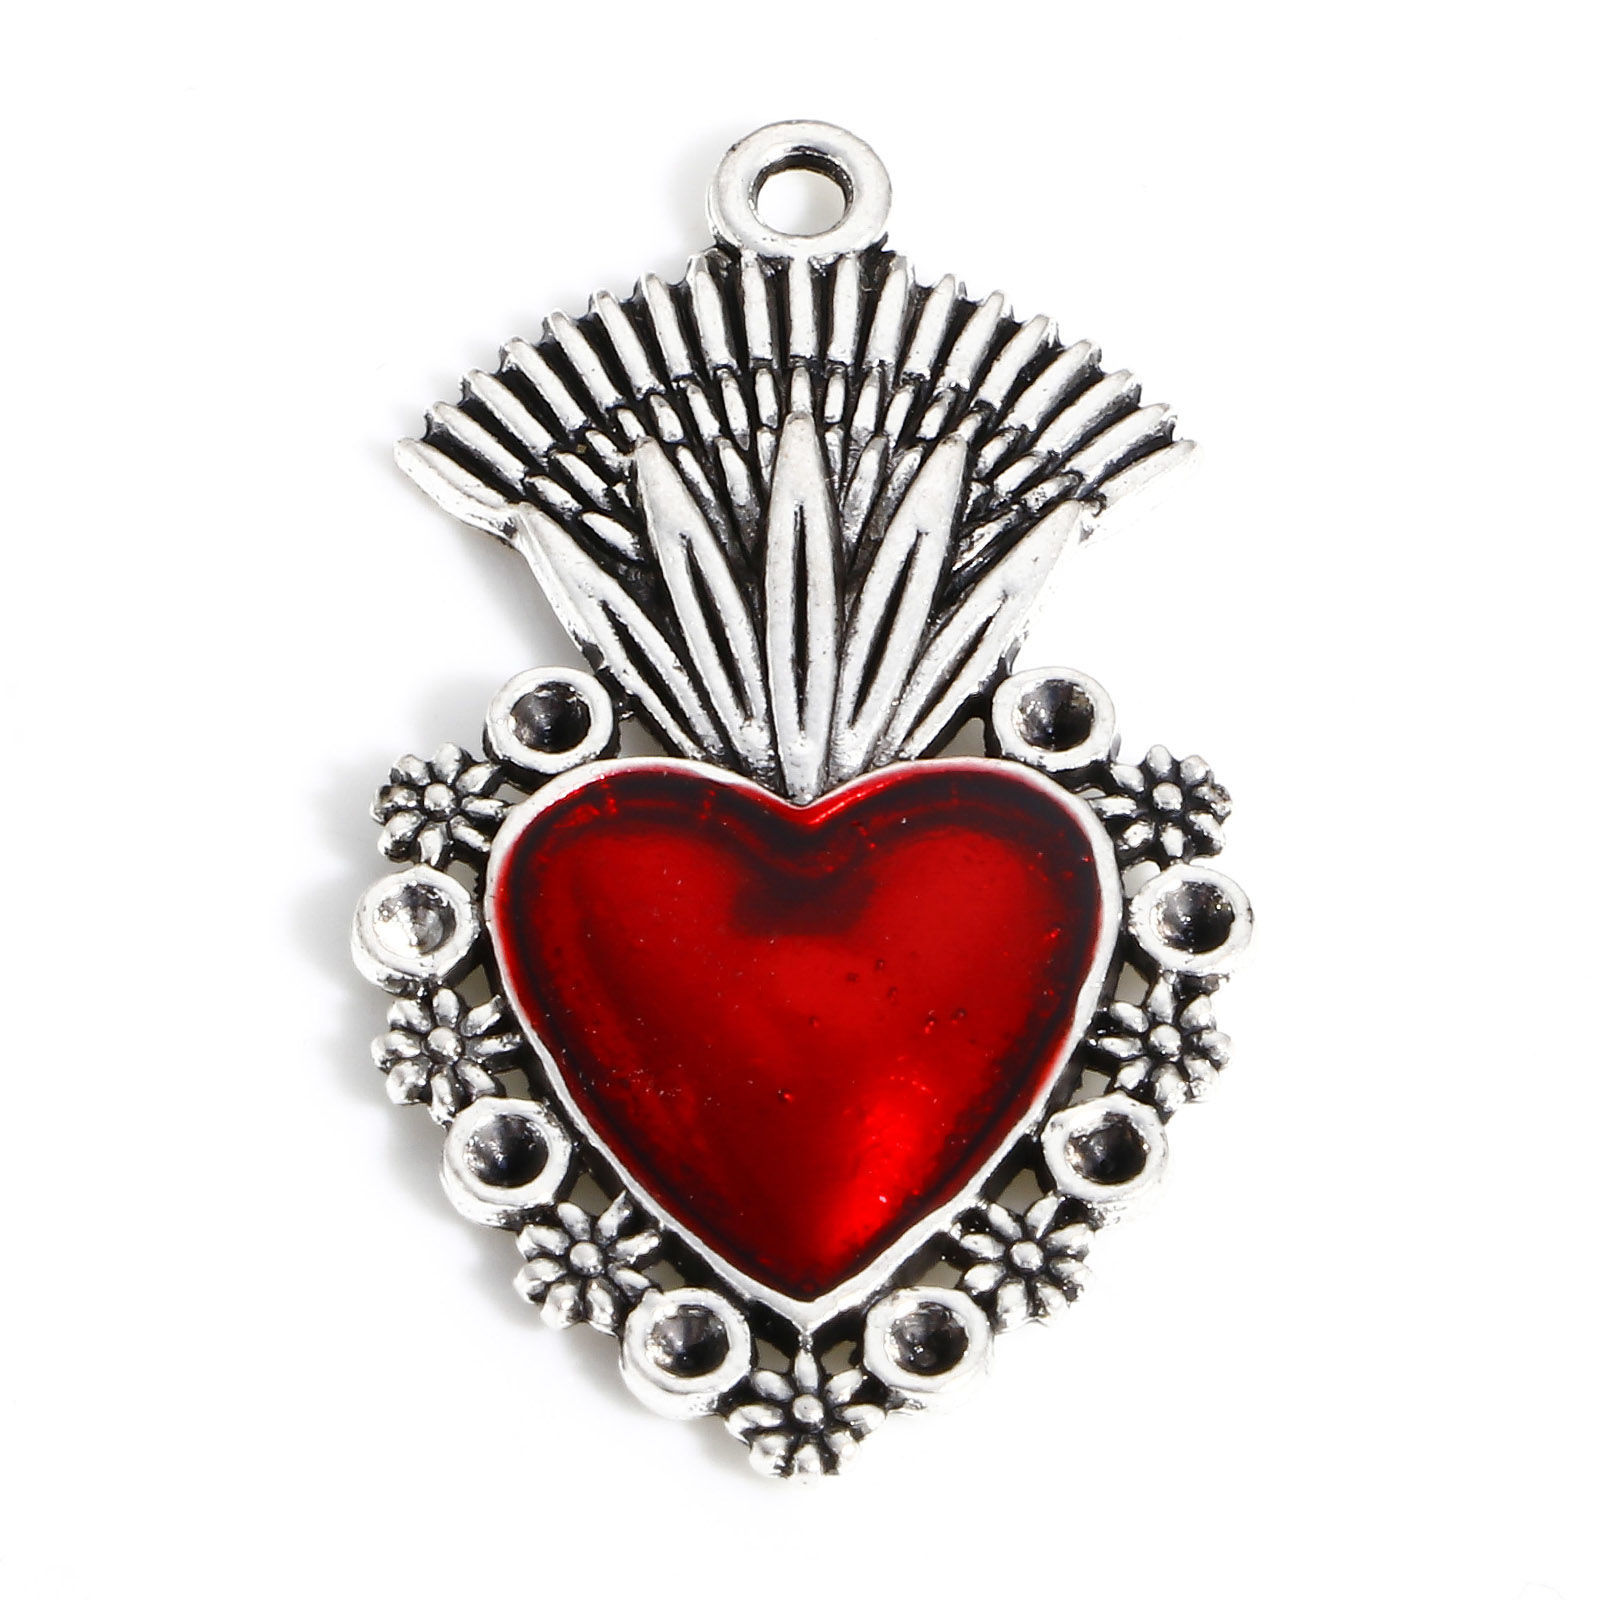 Picture of Zinc Based Alloy Religious Pendants Antique Silver Color Red Ex Voto Heart Enamel 3.7cm x 2cm, 5 PCs